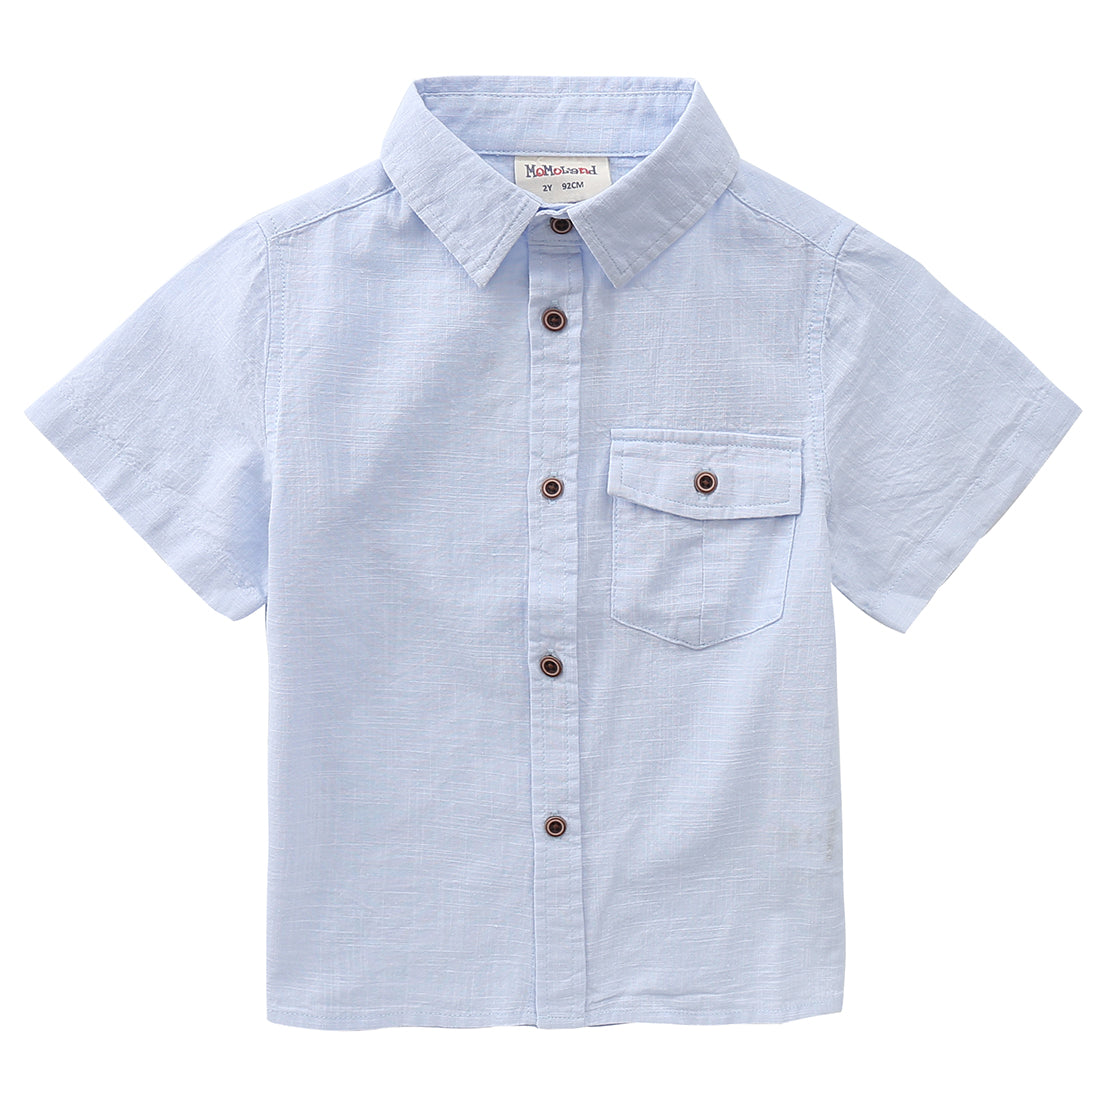 Boy Short Sleeves Fake Linen light blue shirt front